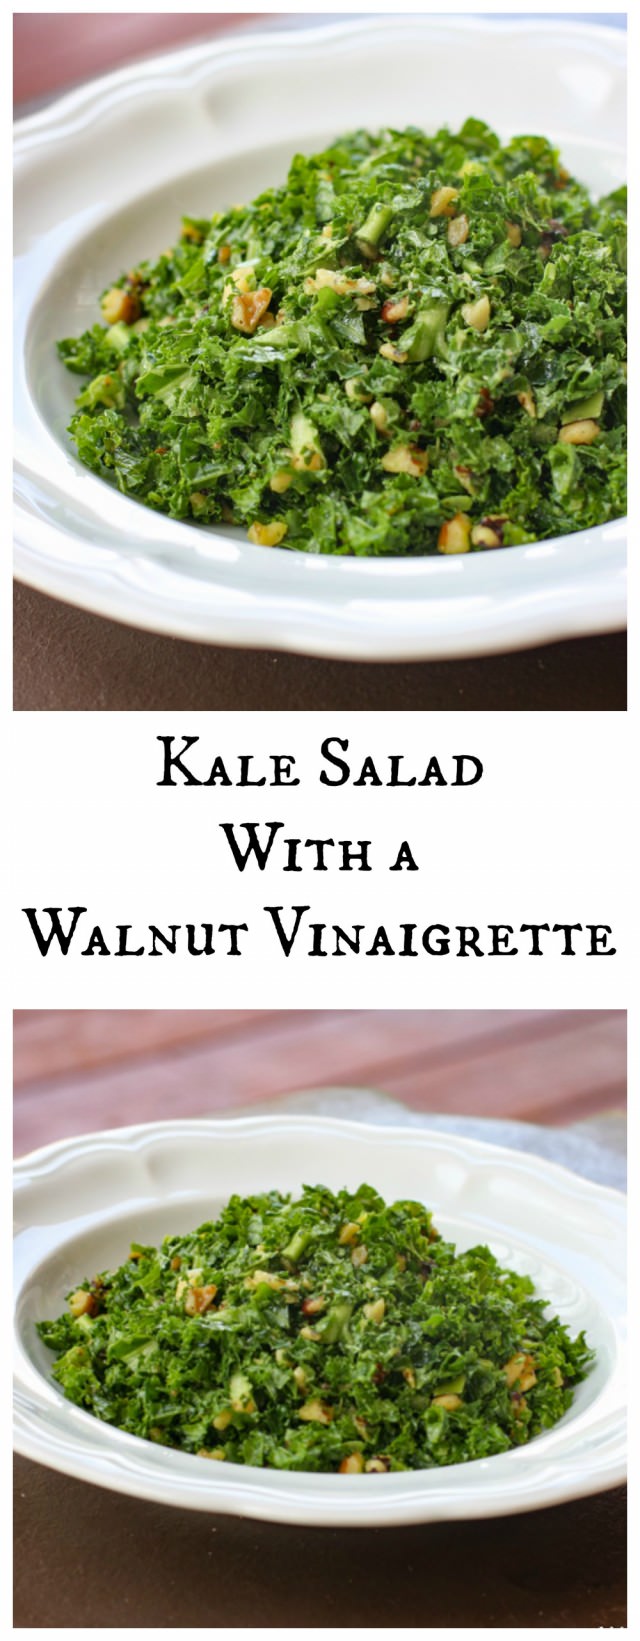 kale salad with a walnut vinaigrette